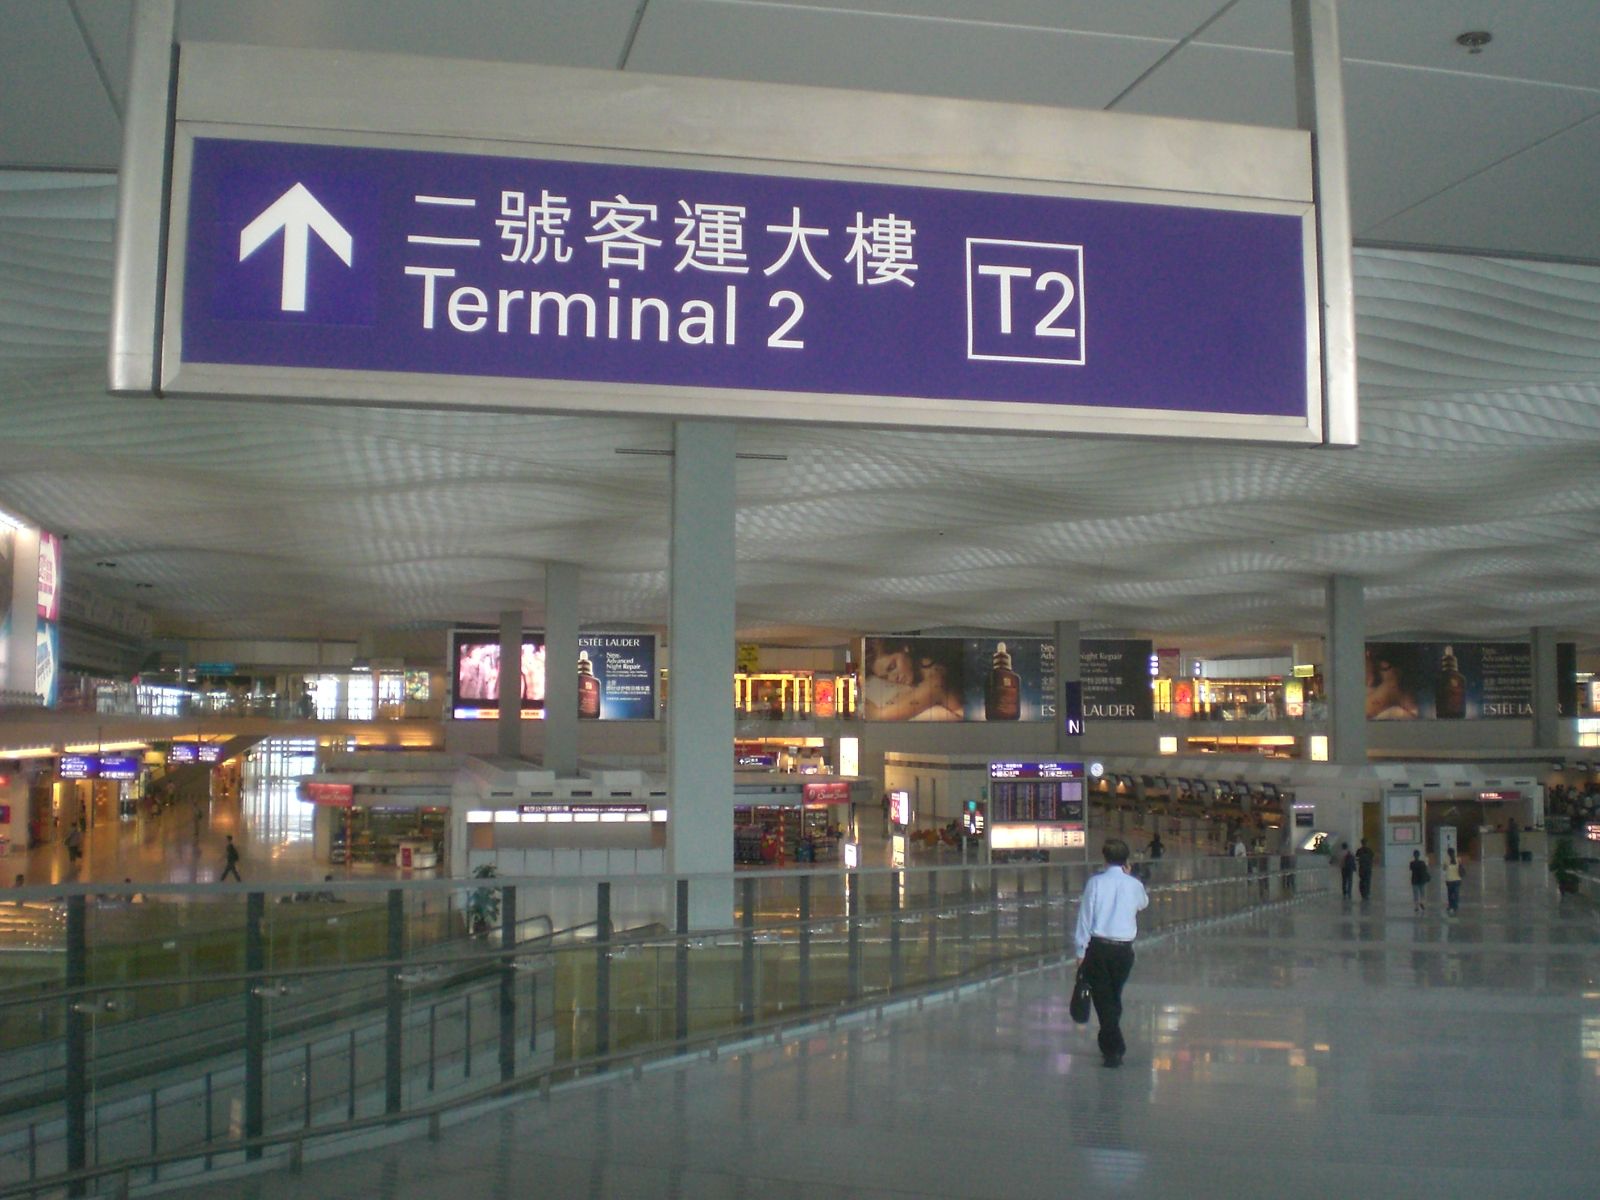 Sign at Hong Kong International Airport pointing to Terminal 2 ahead.